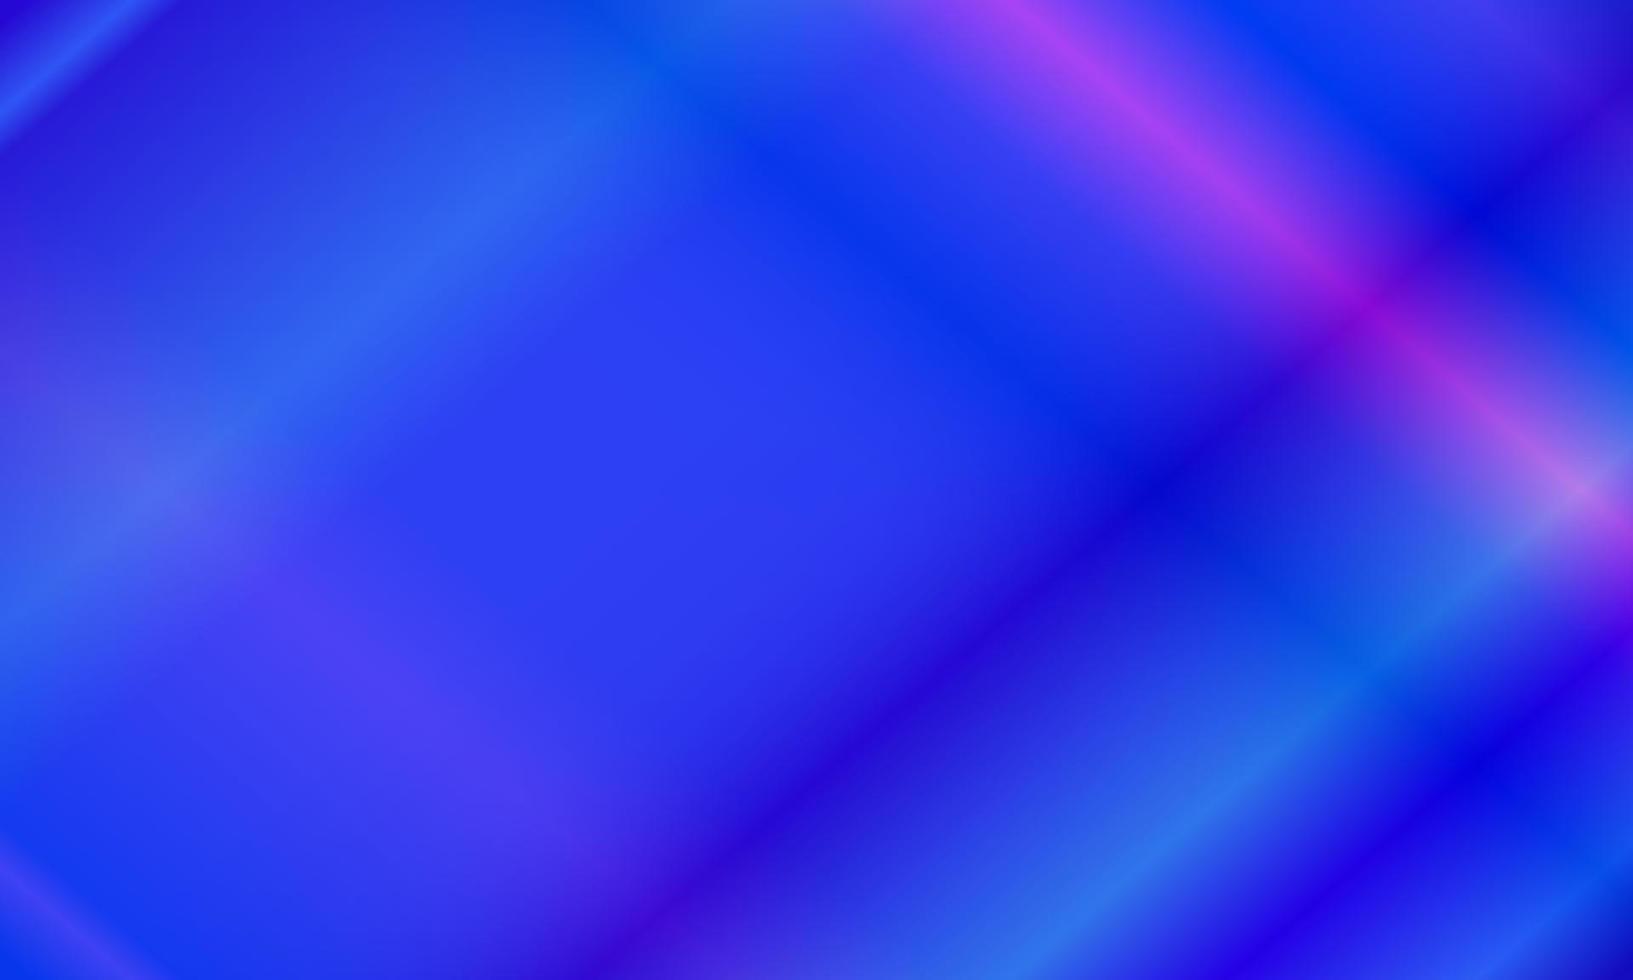 abstrato azul escuro e rosa com padrão de luz neon. estilo brilhante, gradiente, borrão, moderno e colorido. ótimo para plano de fundo, pano de fundo, papel de parede, capa, pôster, banner ou panfleto vetor